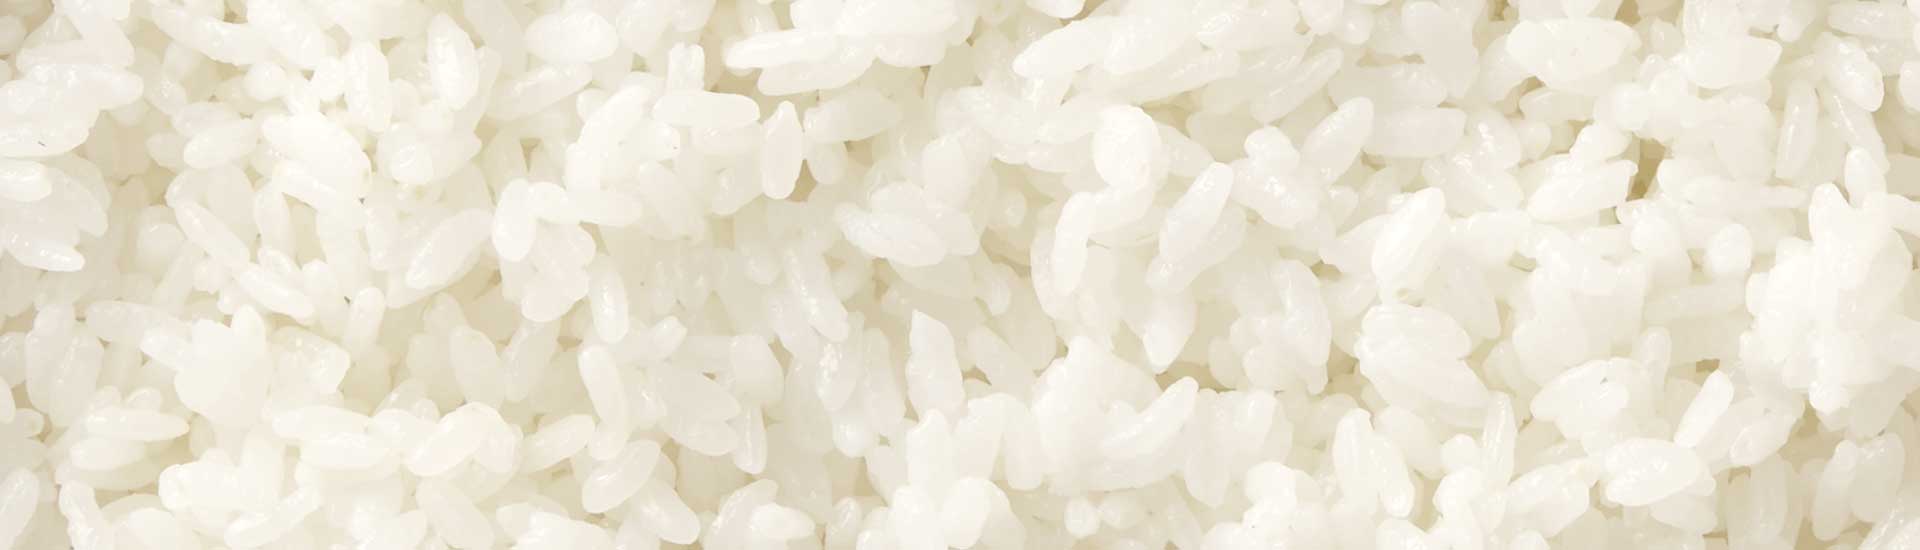 Fotografia de detalhes de grãos de arroz